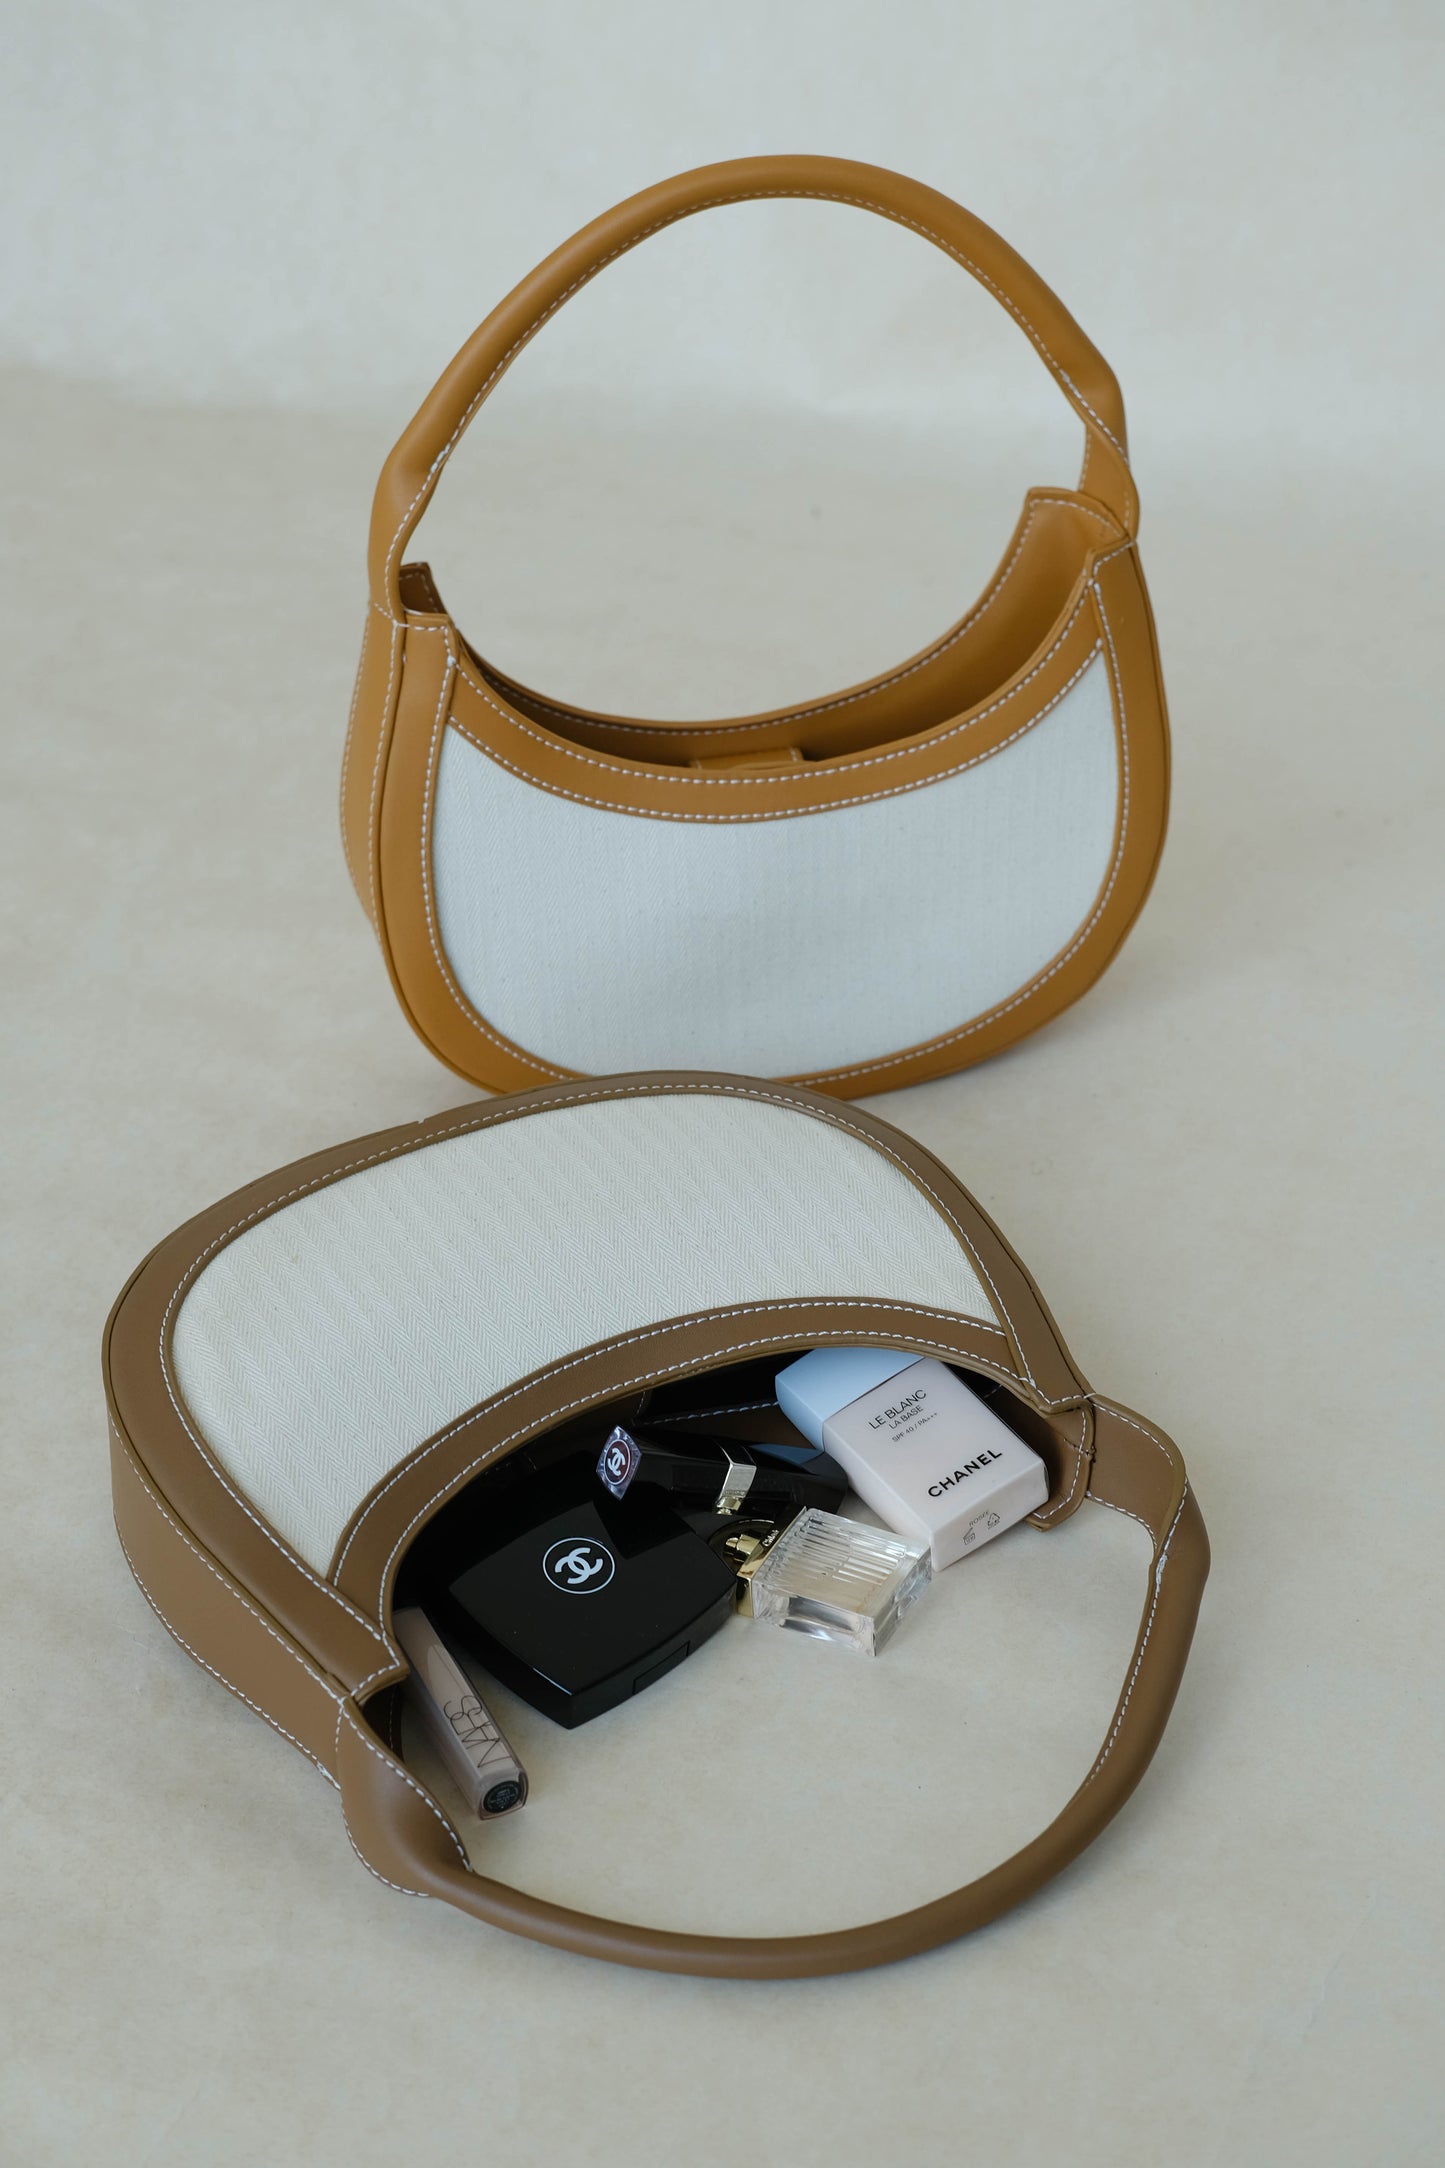 Canvas contrasting handbag in brown color